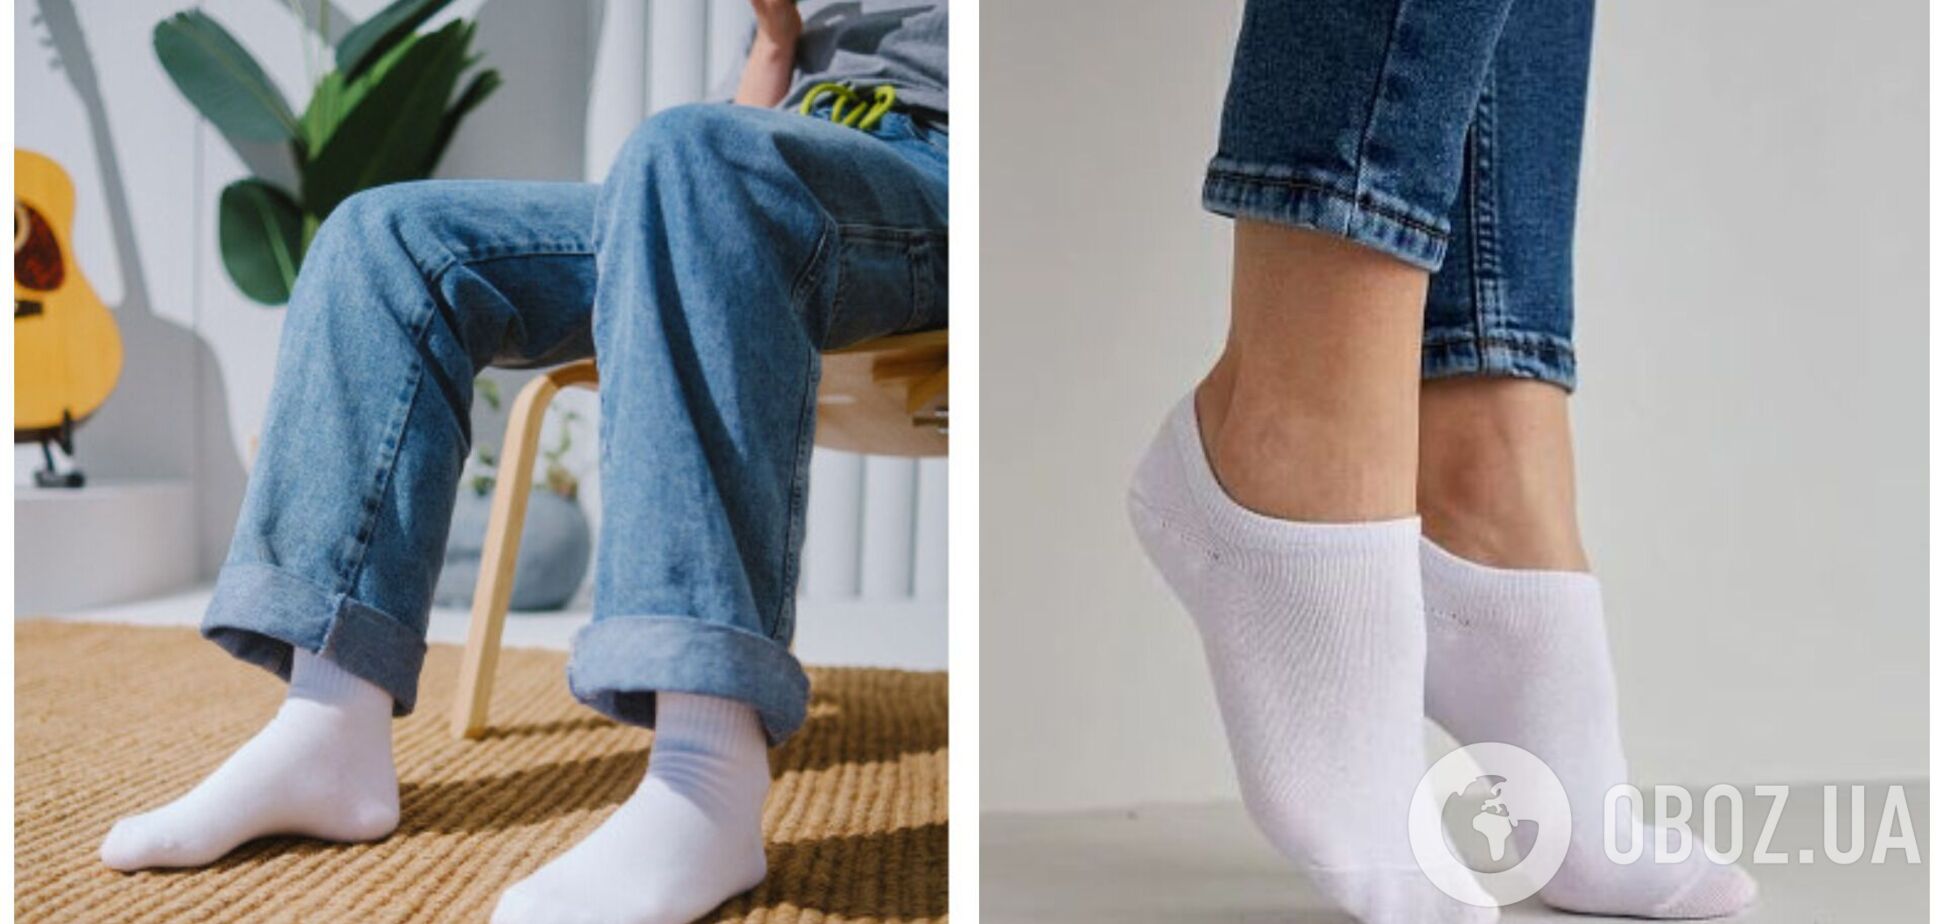 Чем постирать носки, чтобы они снова стали белоснежными.